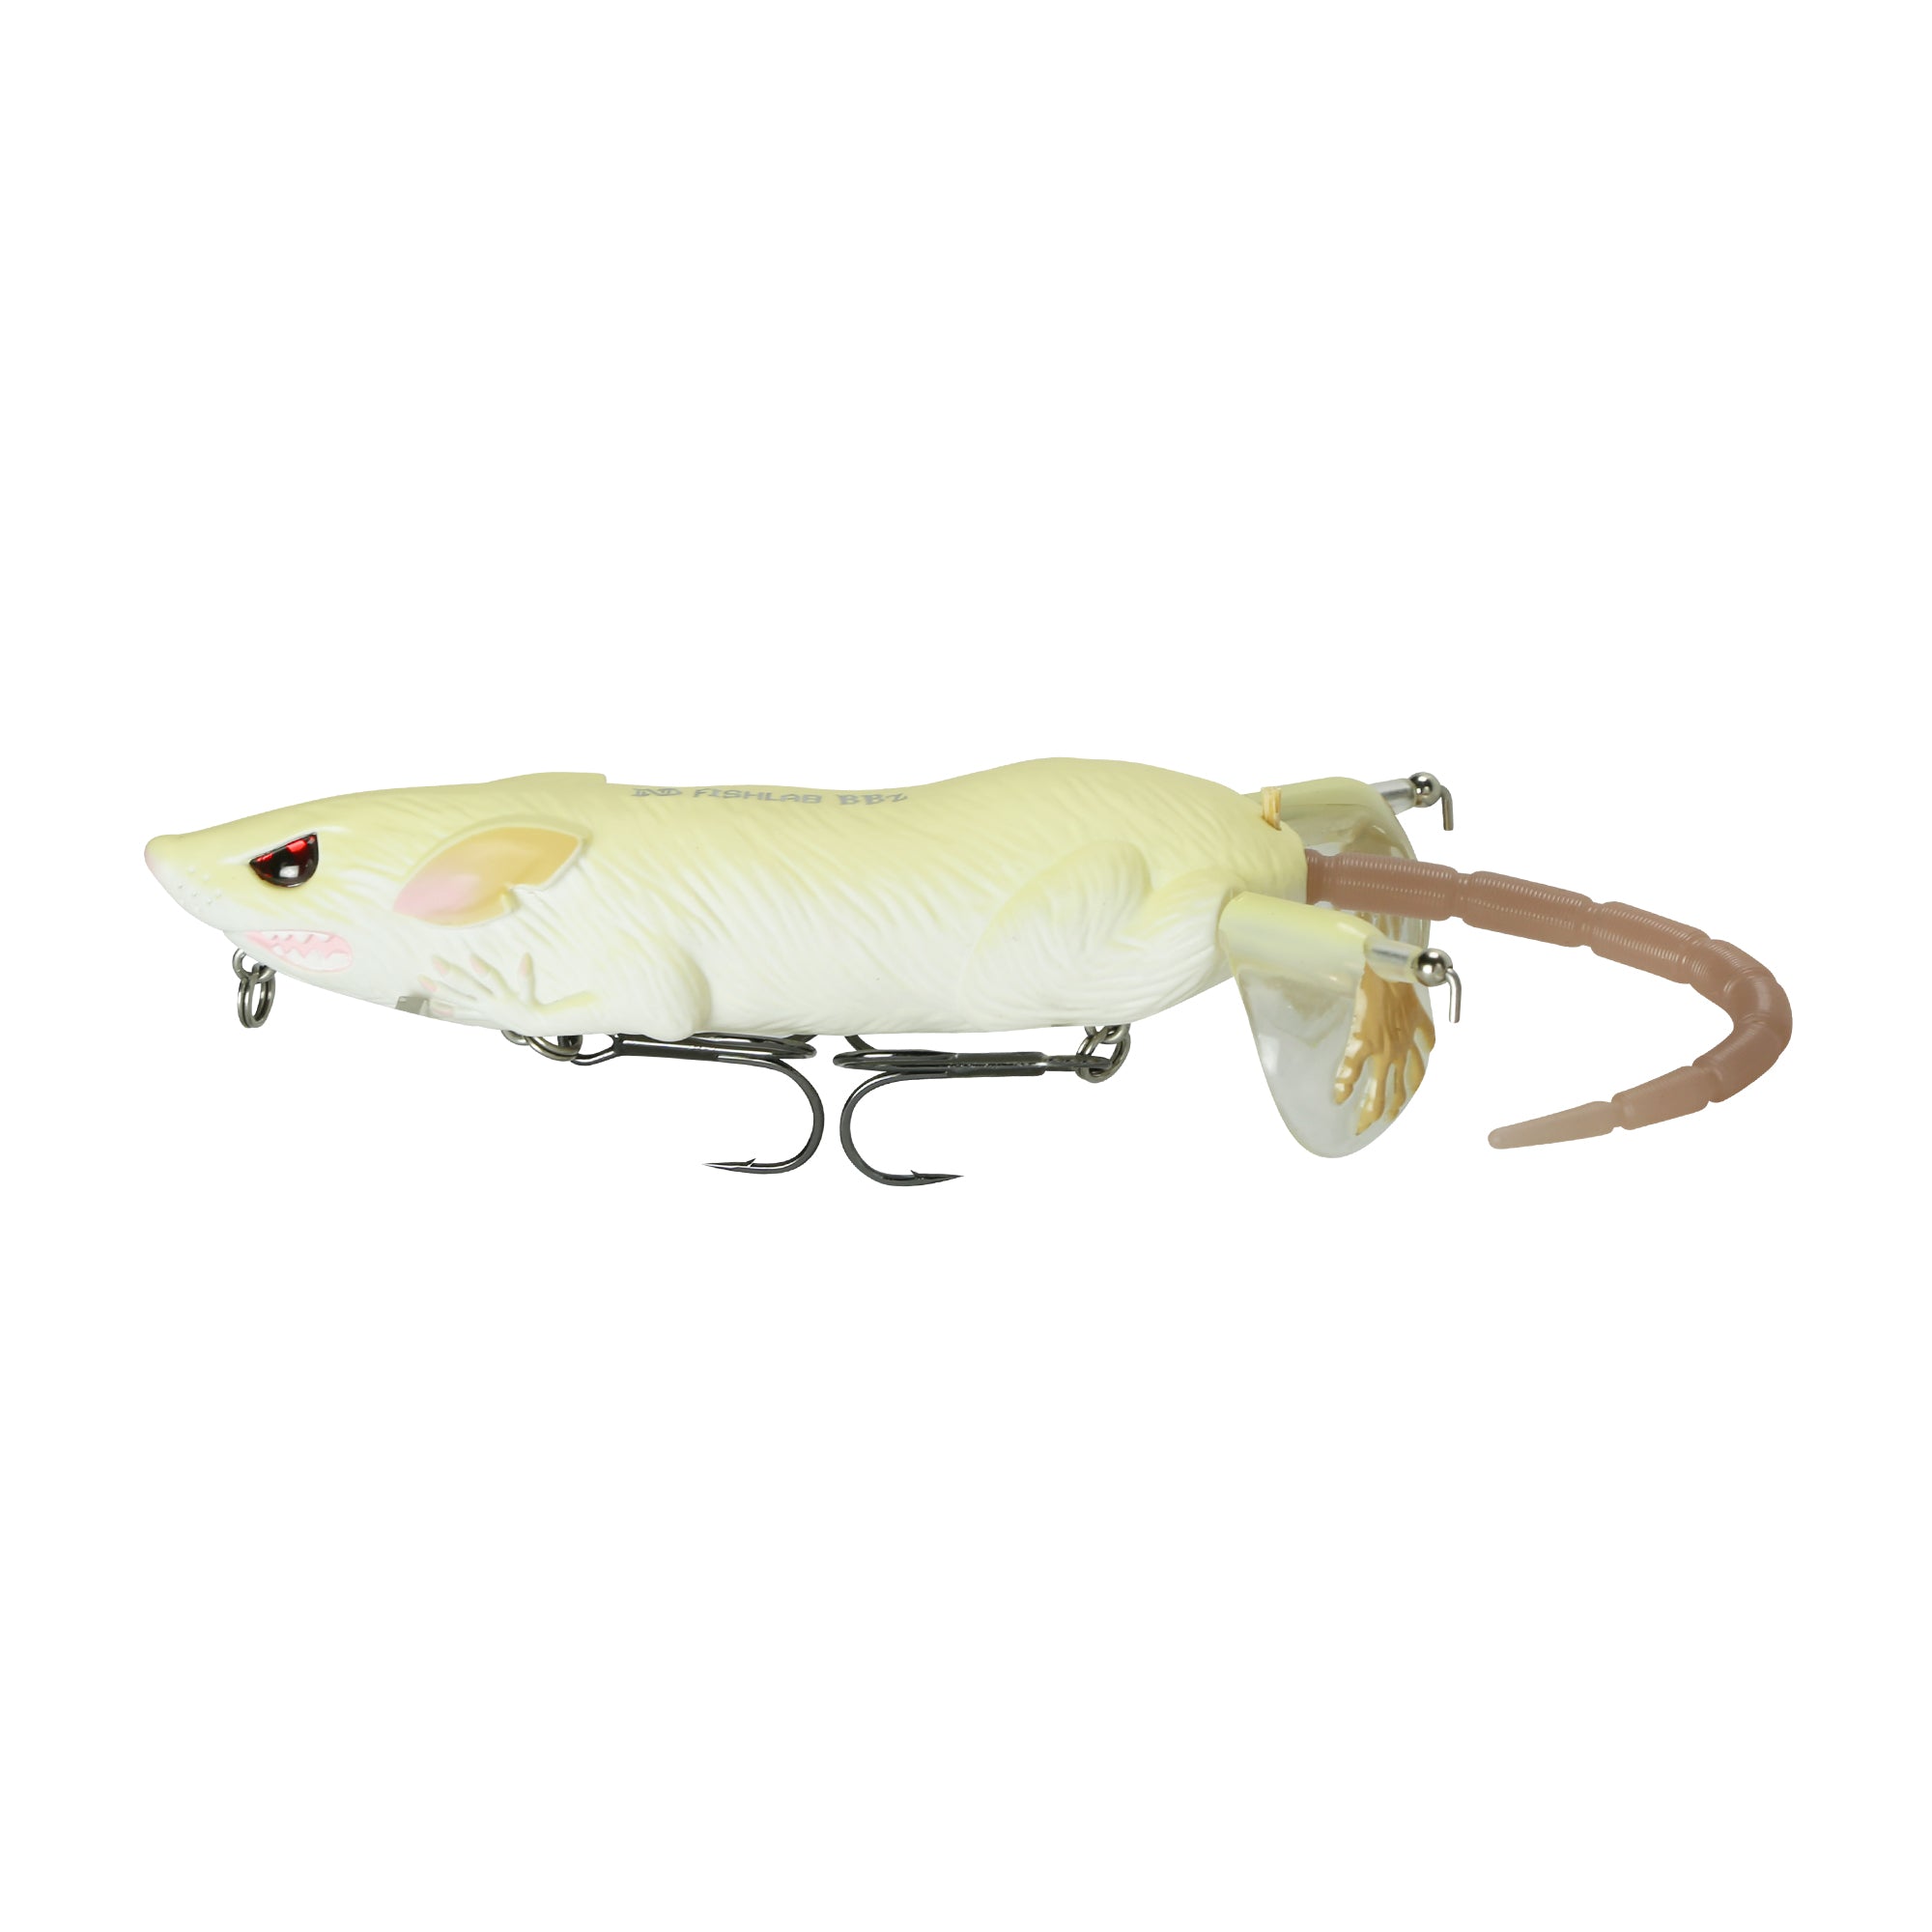 BBZ Bio-Rat – FishLab